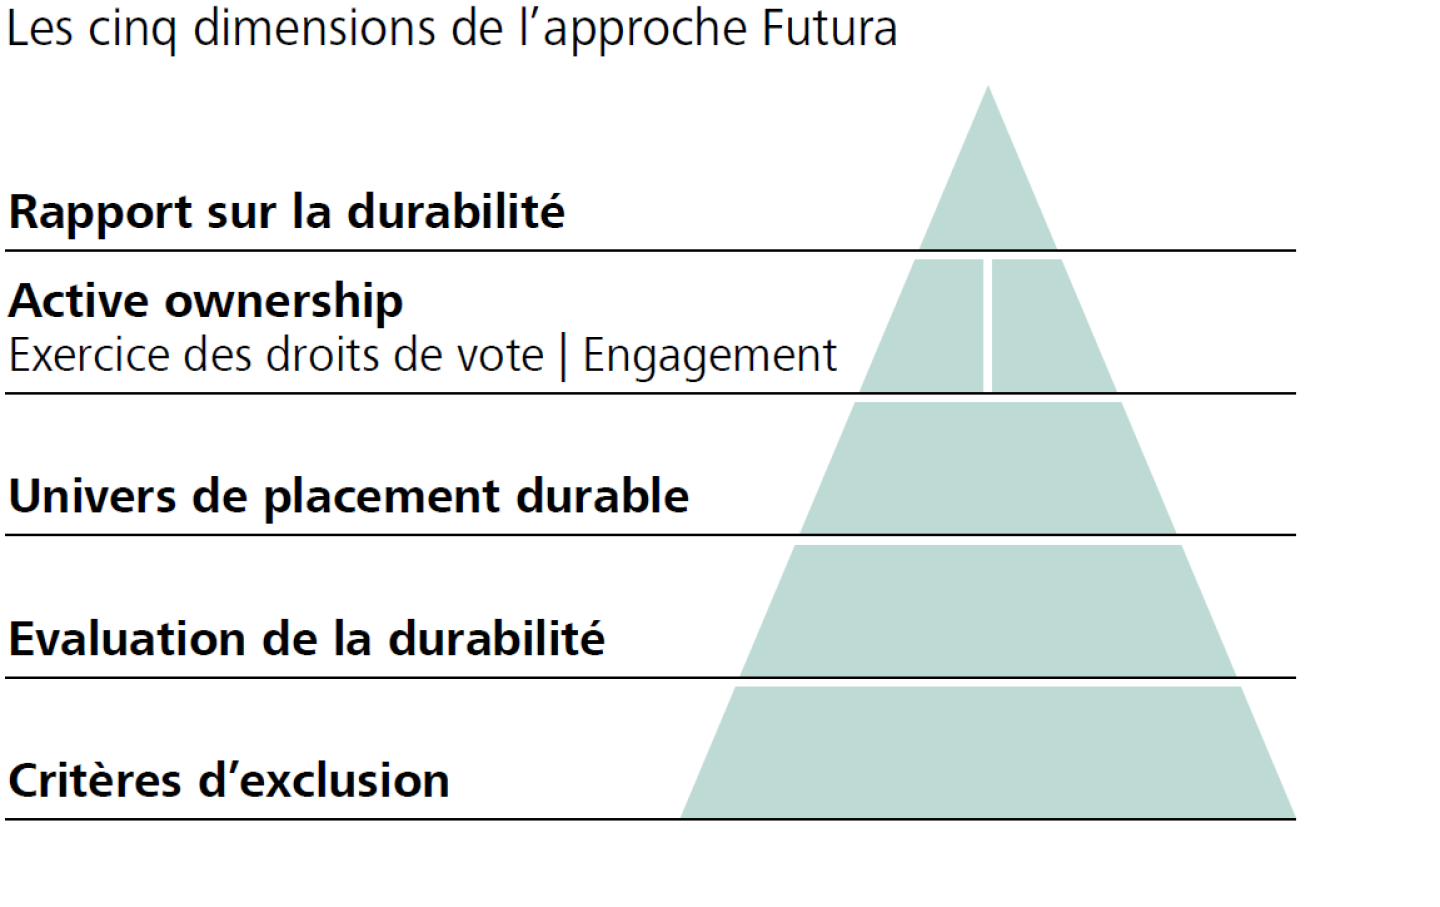 Les cinq dimensions de l'approche Futura